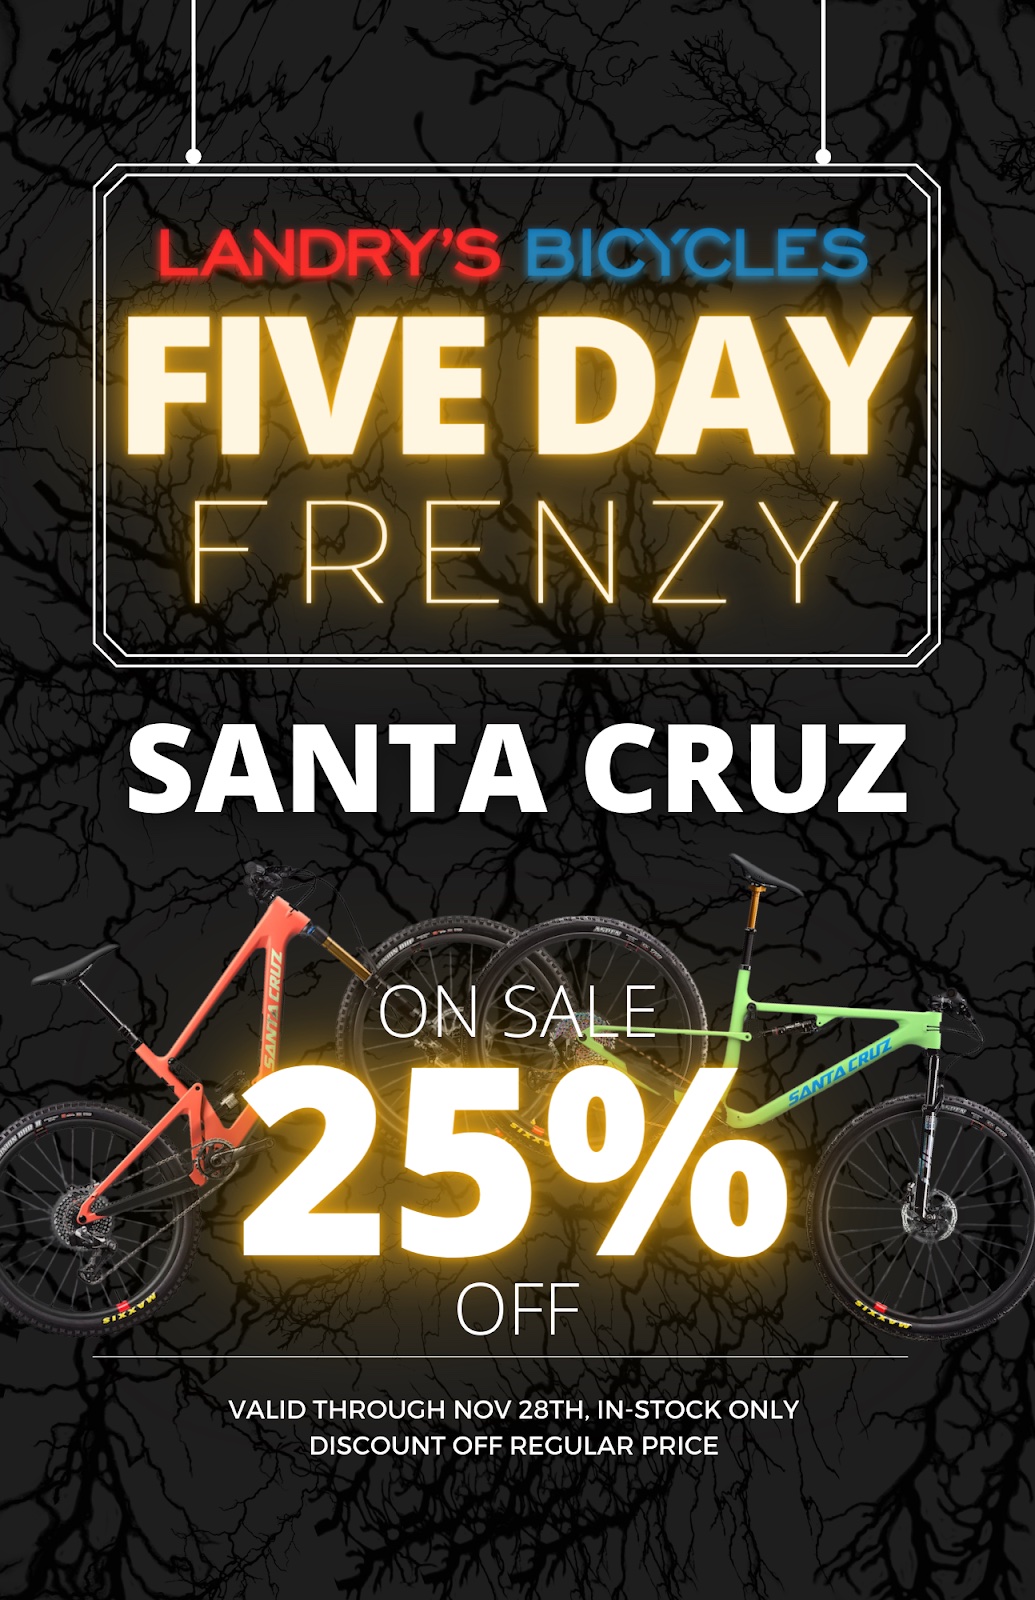 SAVE on Santa Cruz Bikes